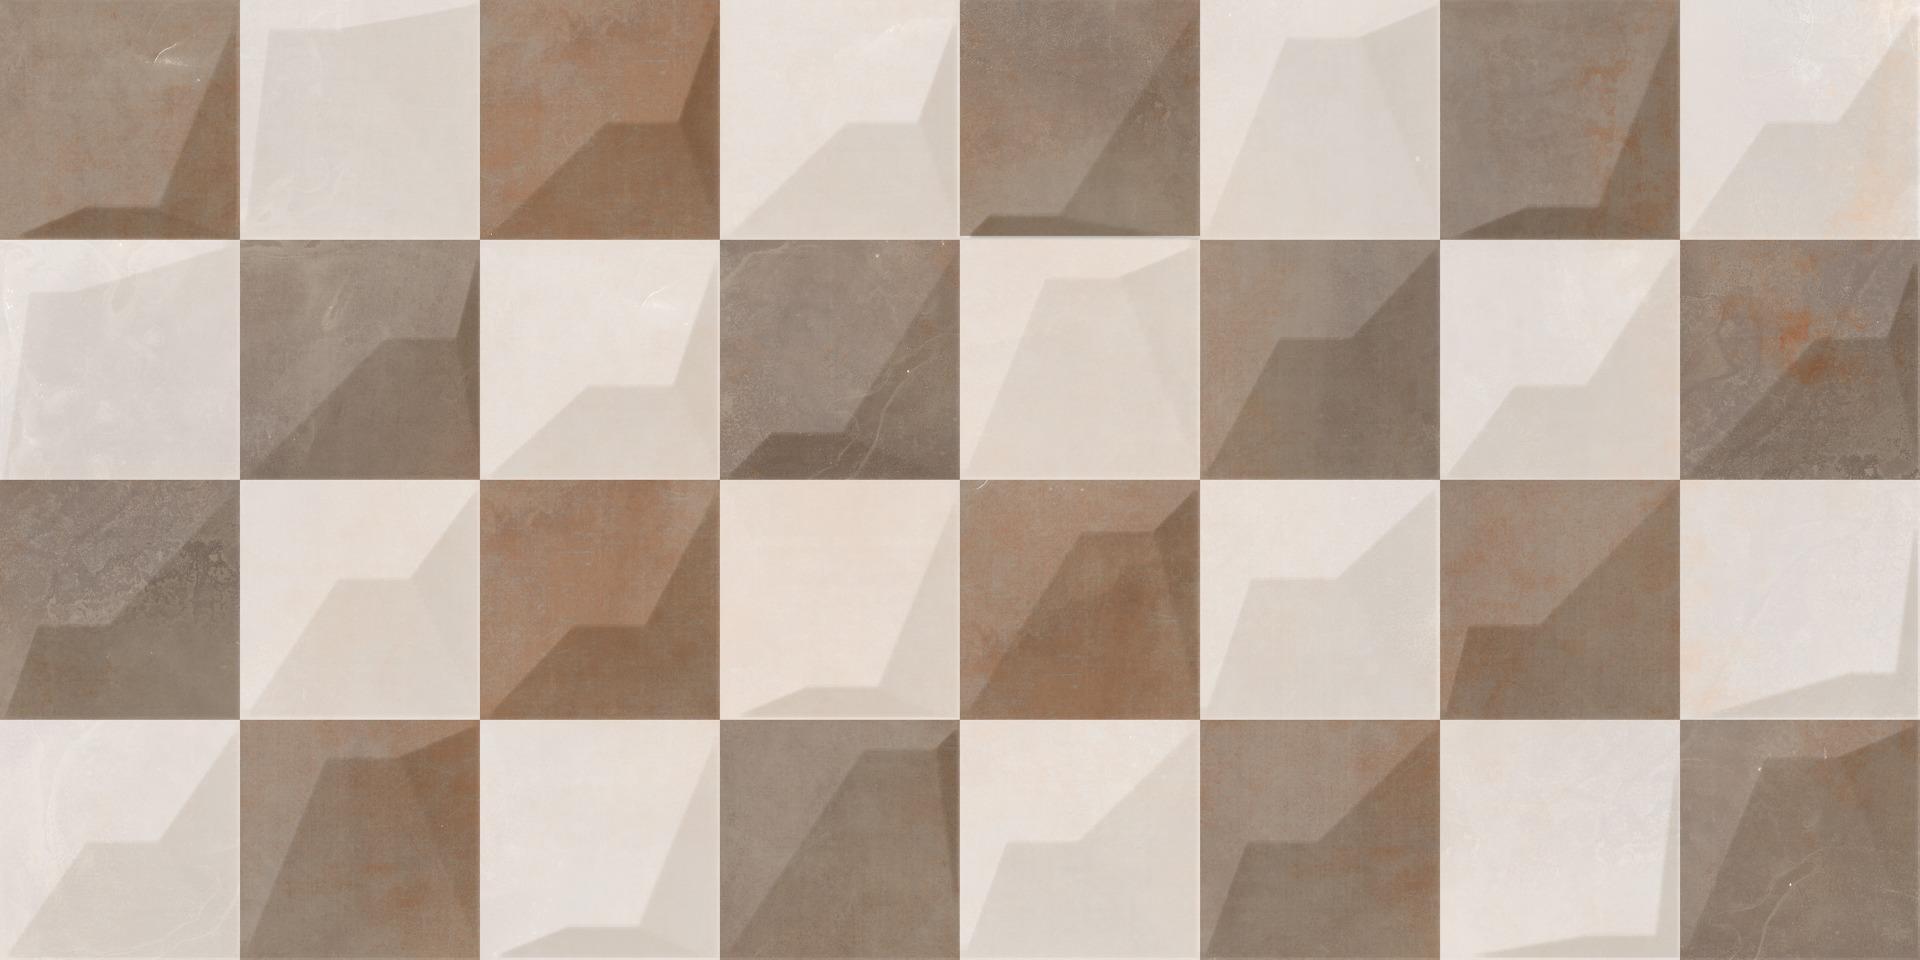 Matte Finish Tiles for Bathroom Tiles, Living Room Tiles, Kitchen Tiles, Bedroom Tiles, Balcony Tiles